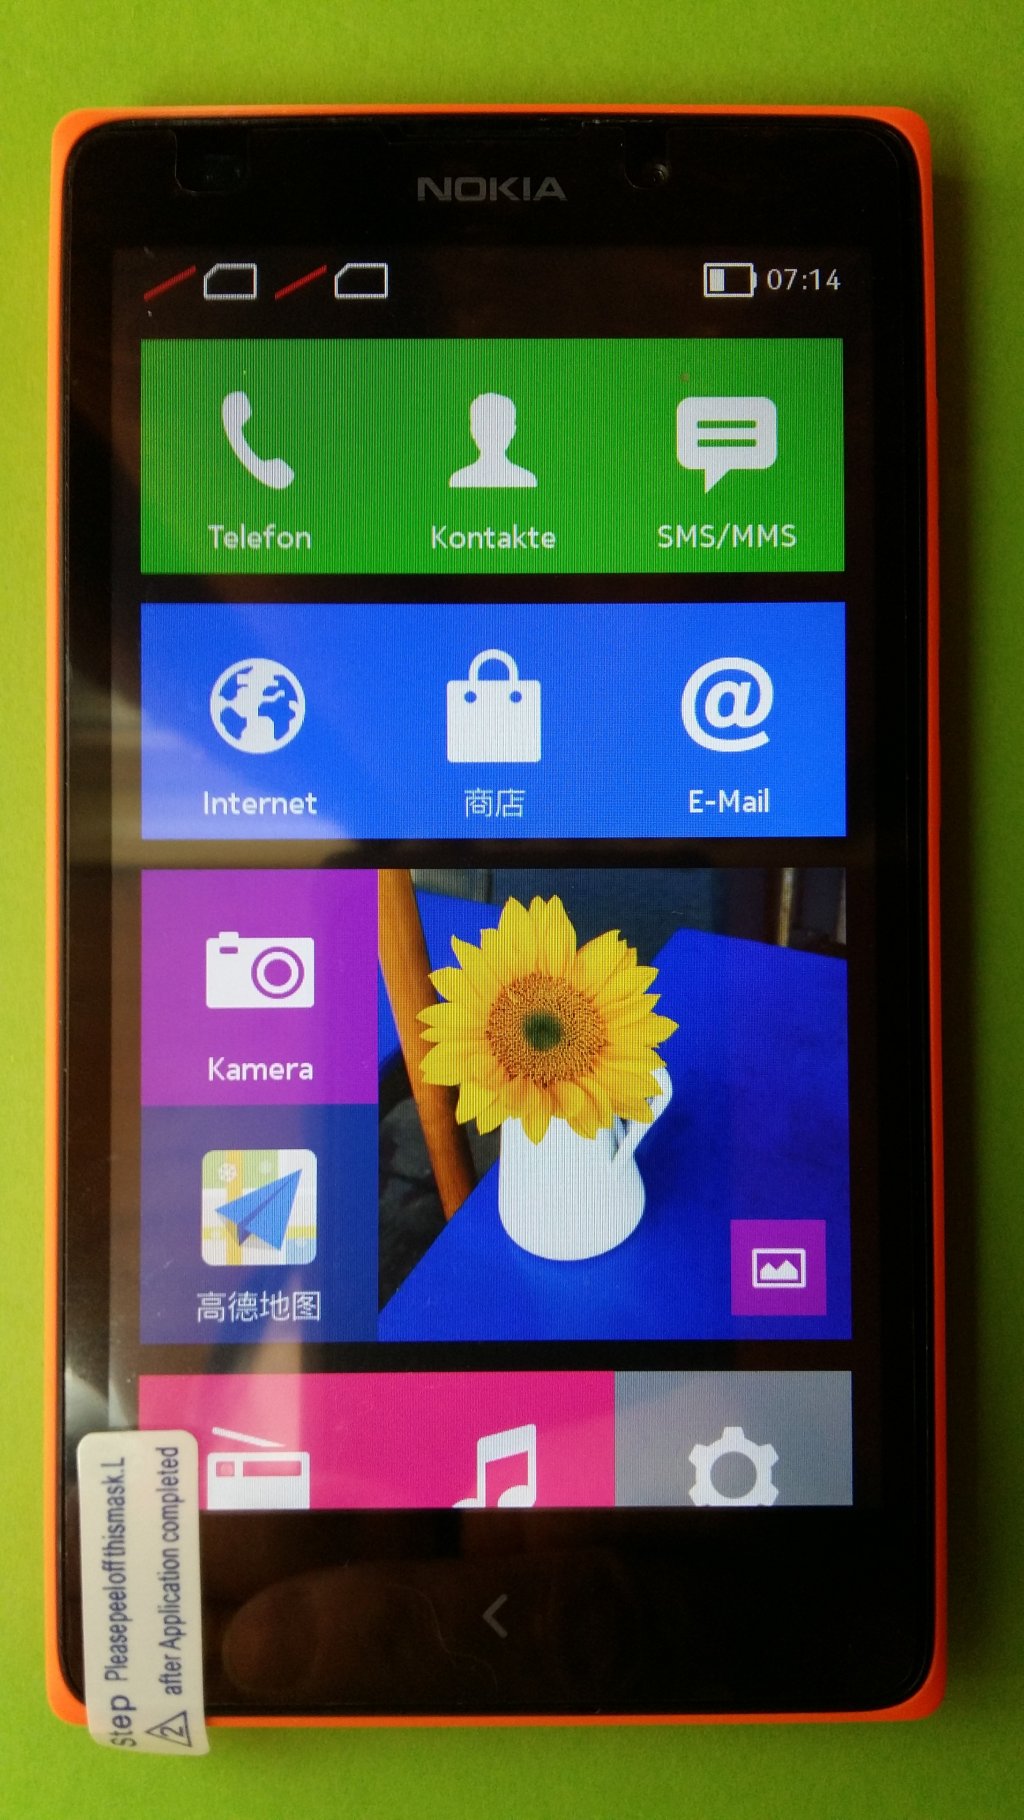 image-8797151-Nokia_1030_XL_Lumia_(1)1.w640.jpg